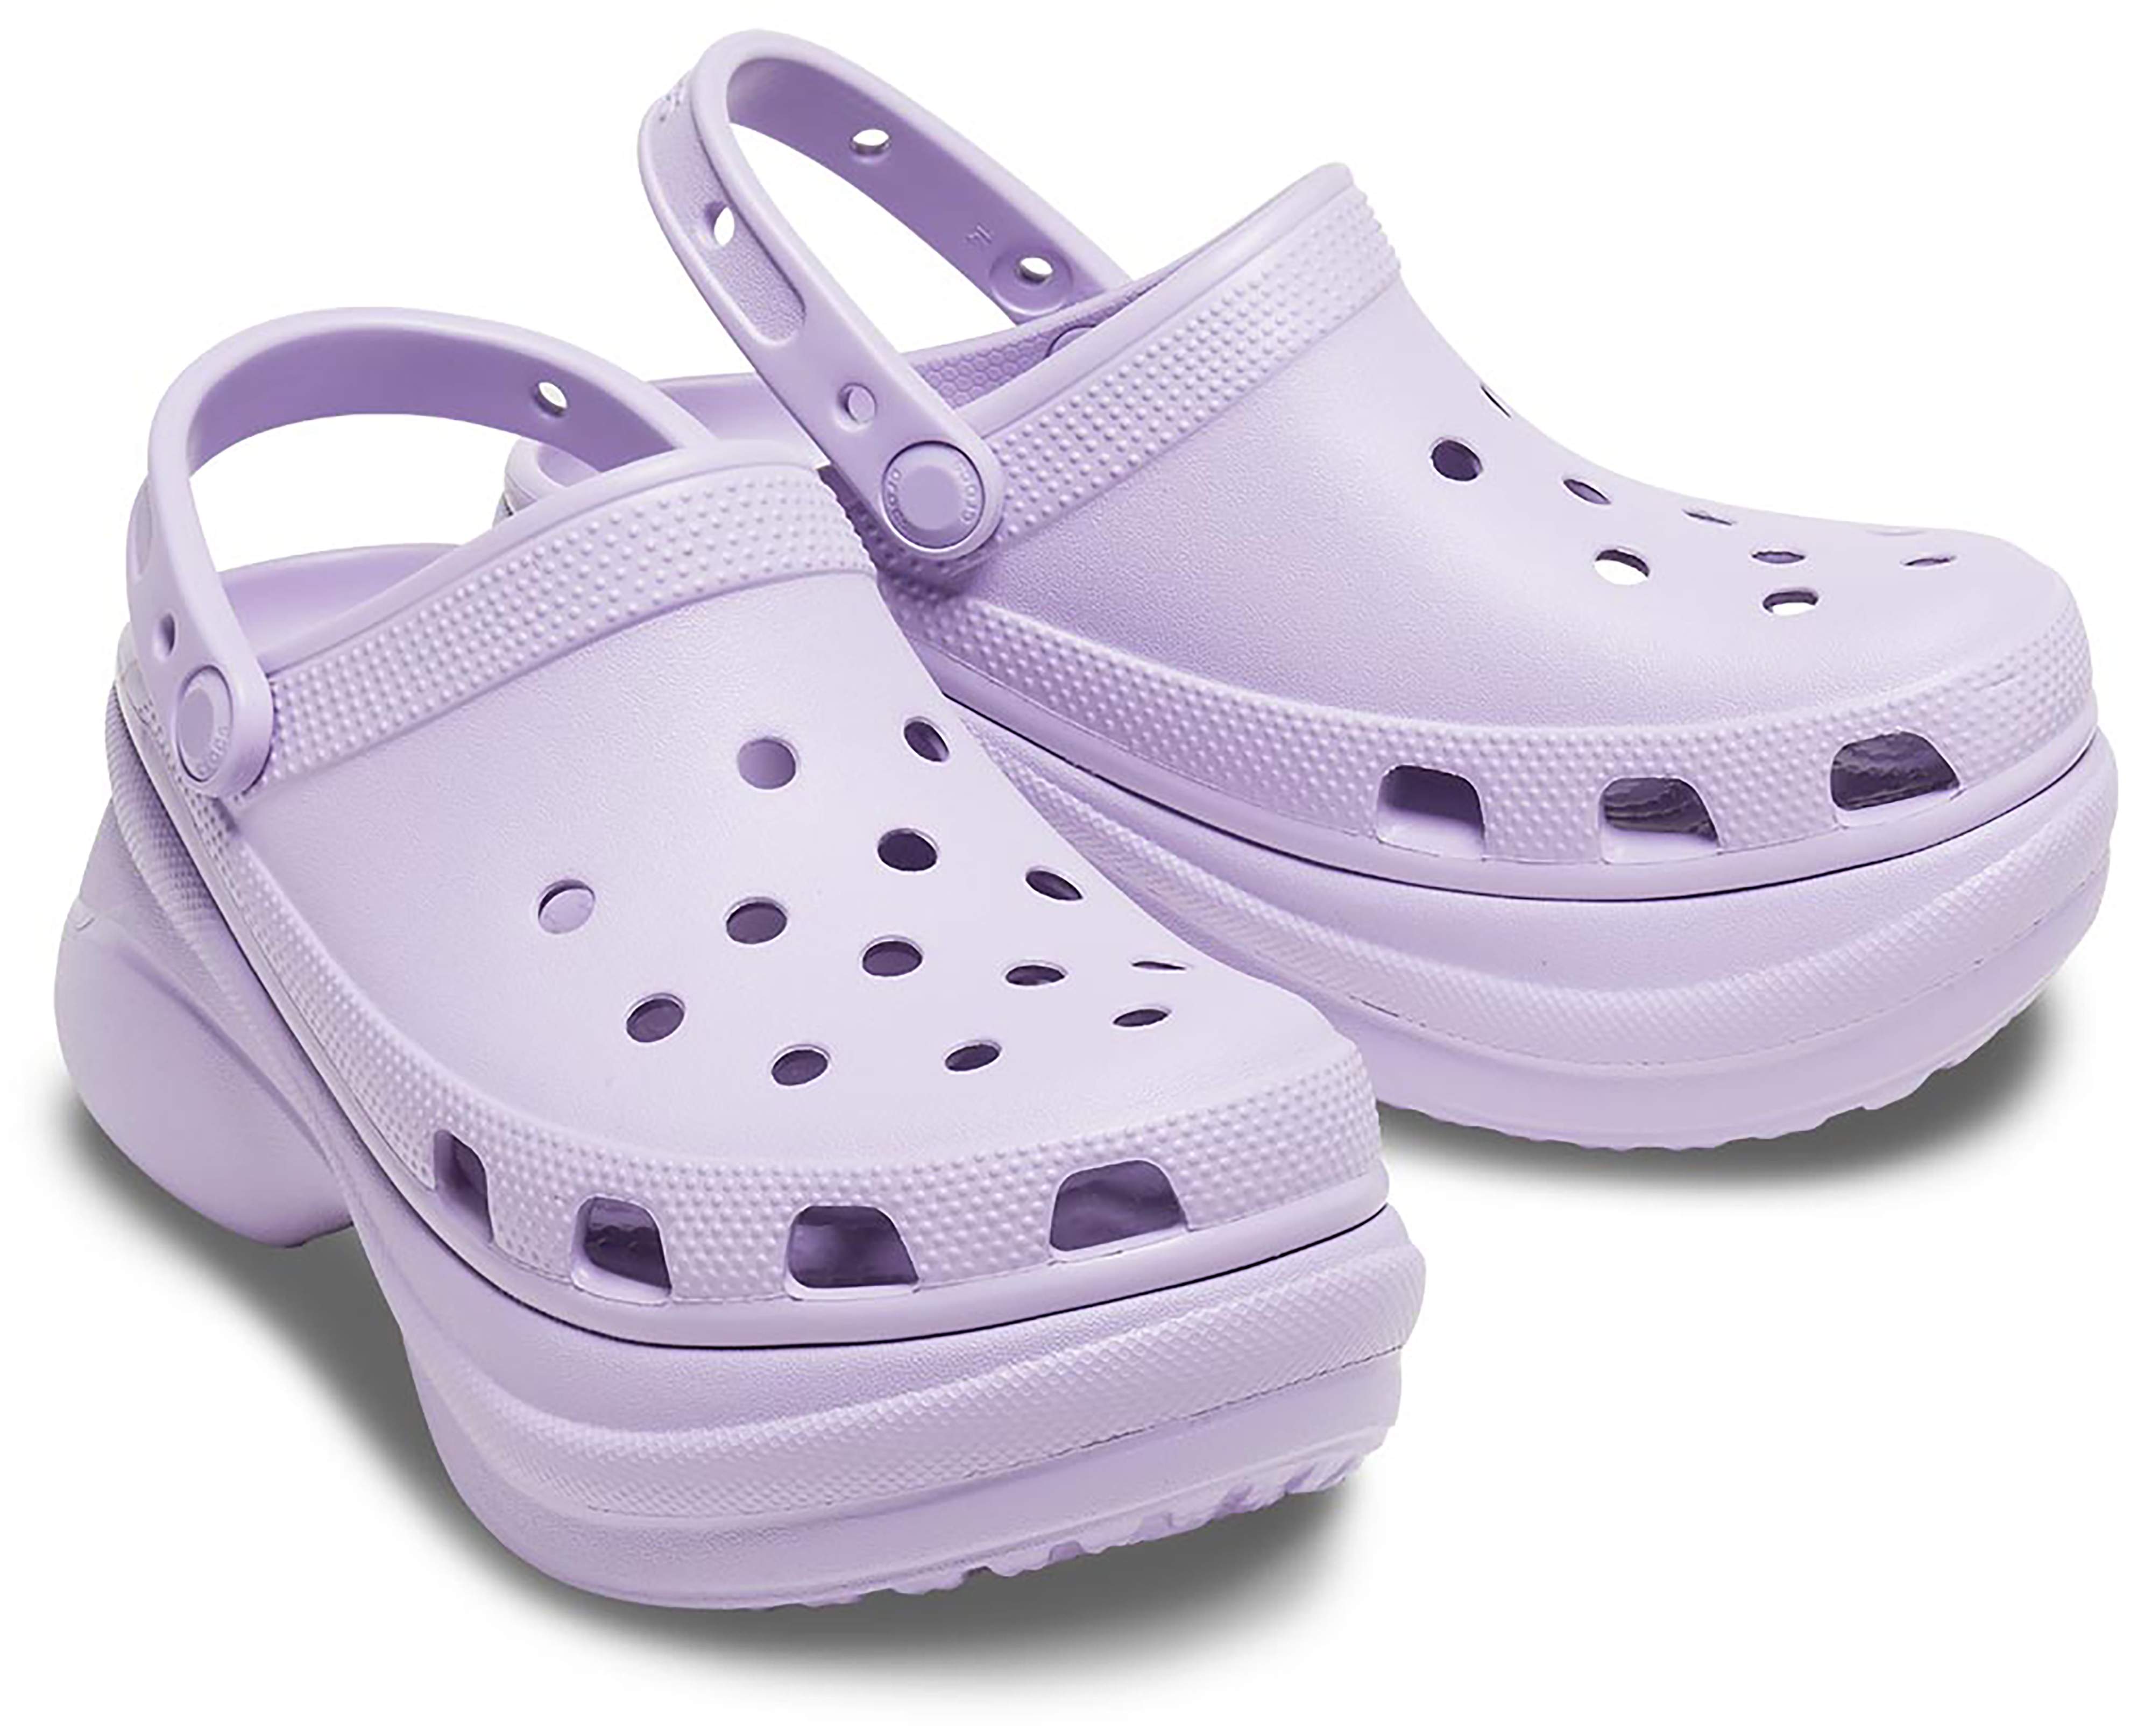 show me crocs shoes